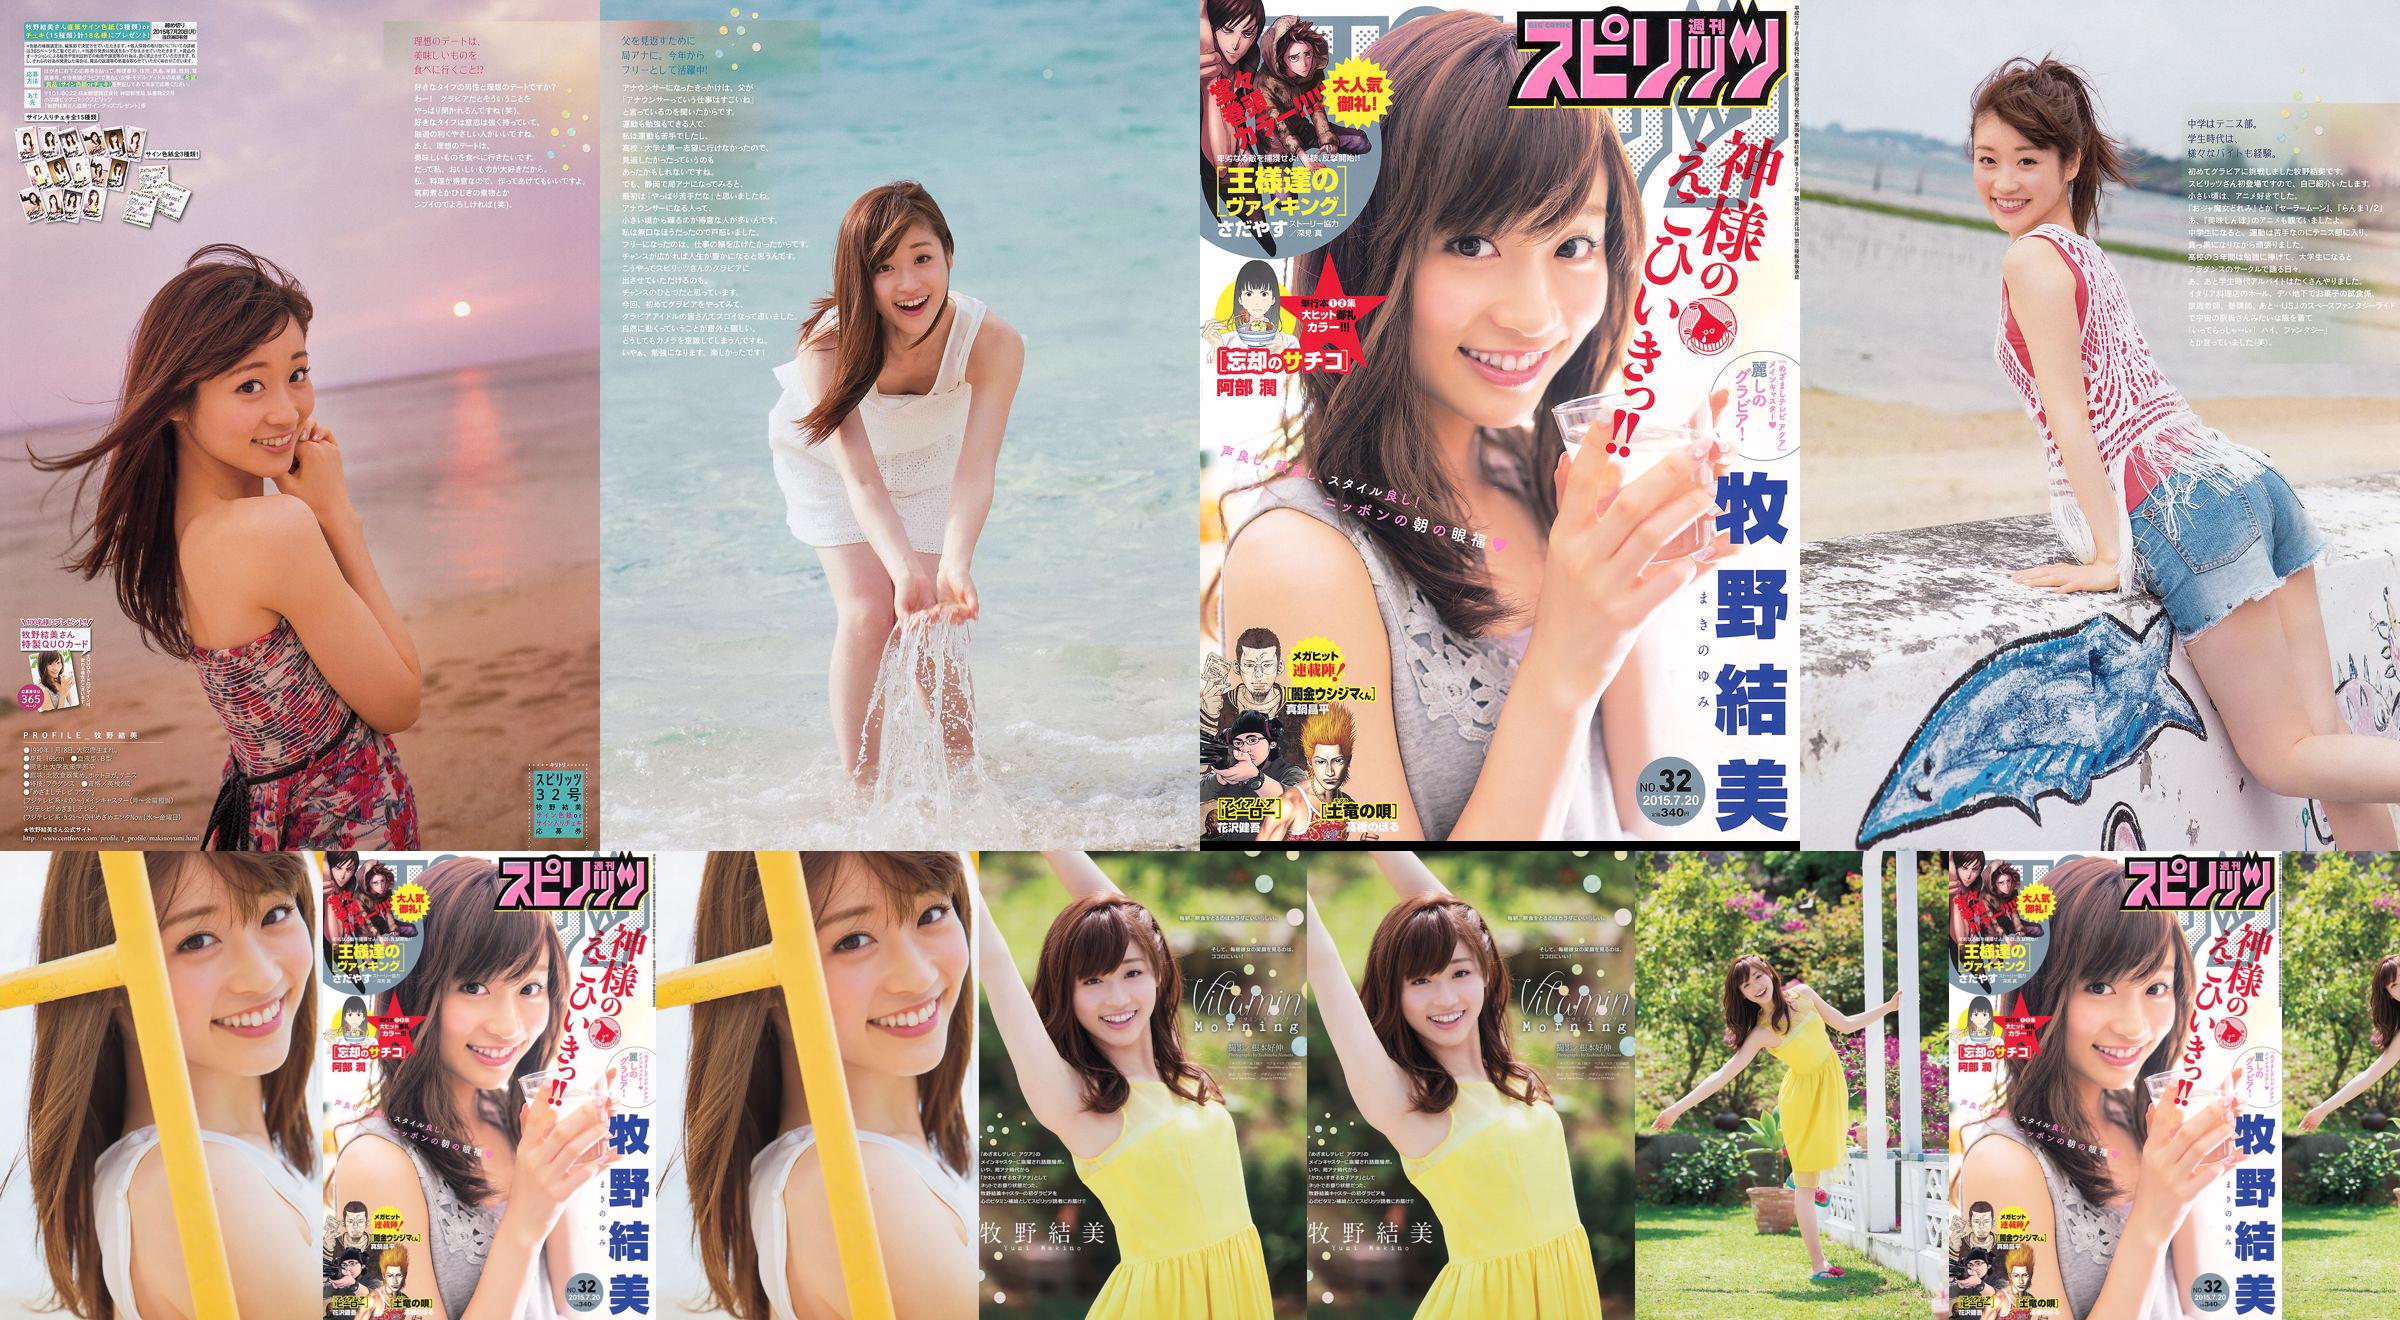 [Weekly Big Comic Spirits] Yumi Makino 2015 No.32 Photo Magazine No.ddbea8 หน้า 3